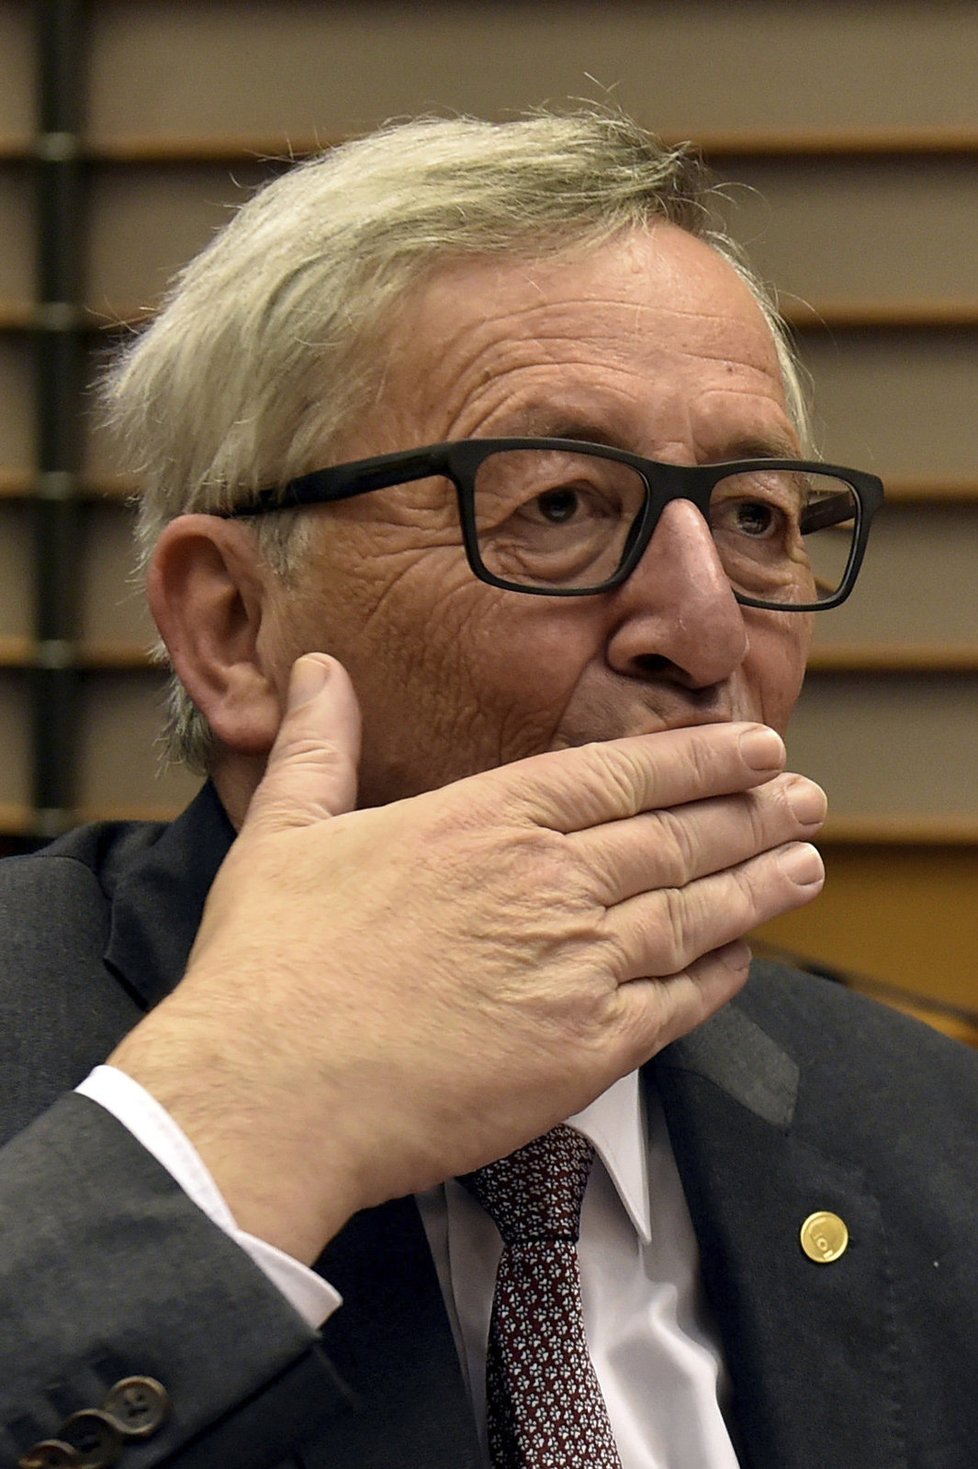 Británie se povinností nezbaví, říká Merkelová: Juncker si pak v europarlamentu dobíral britského poslance